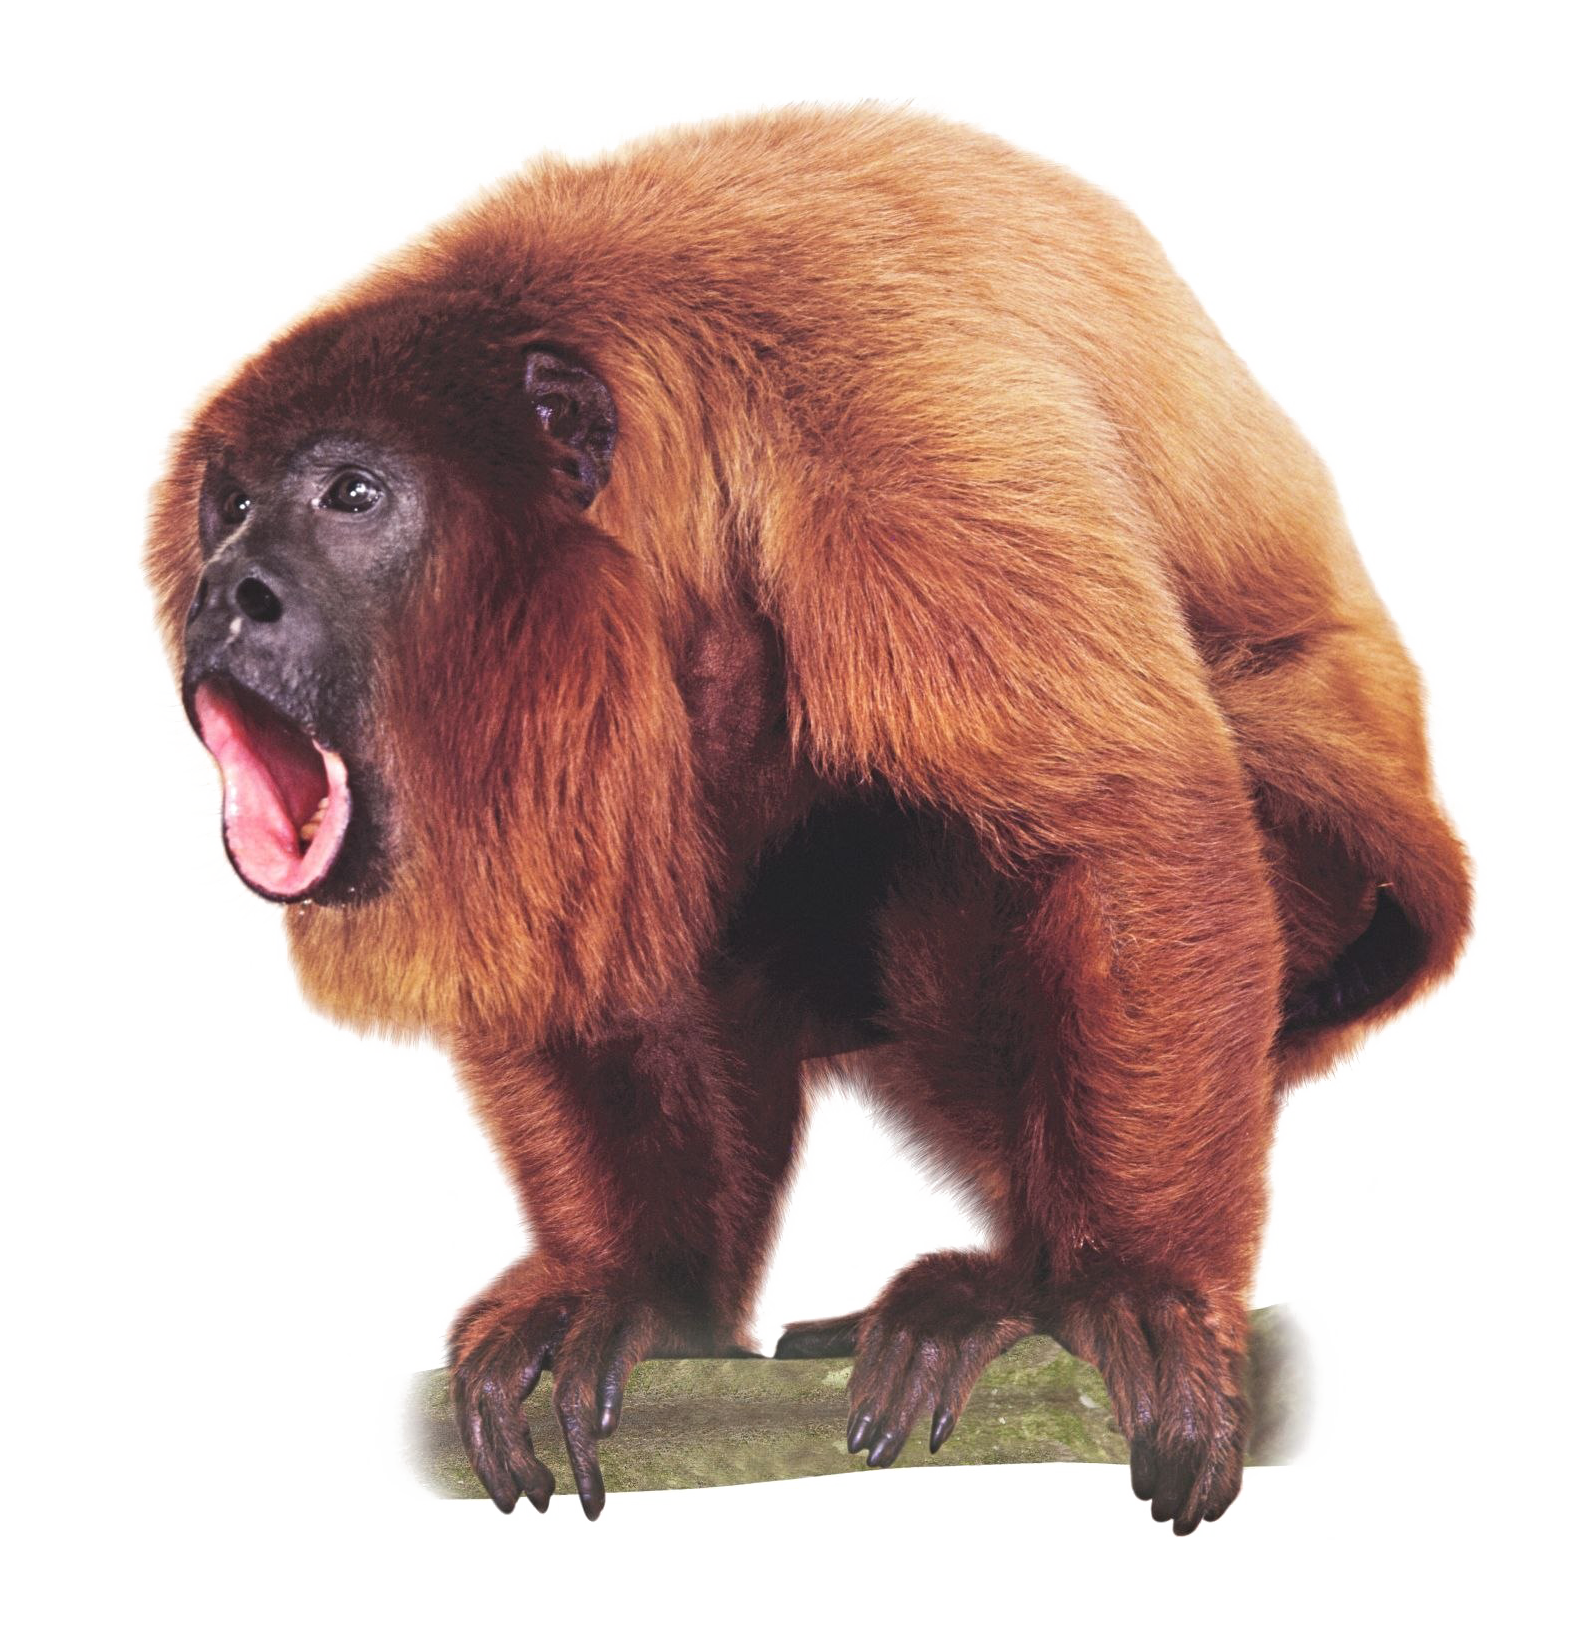 Huge Monkey PNG Image in High Definition Transparent pngteam.com